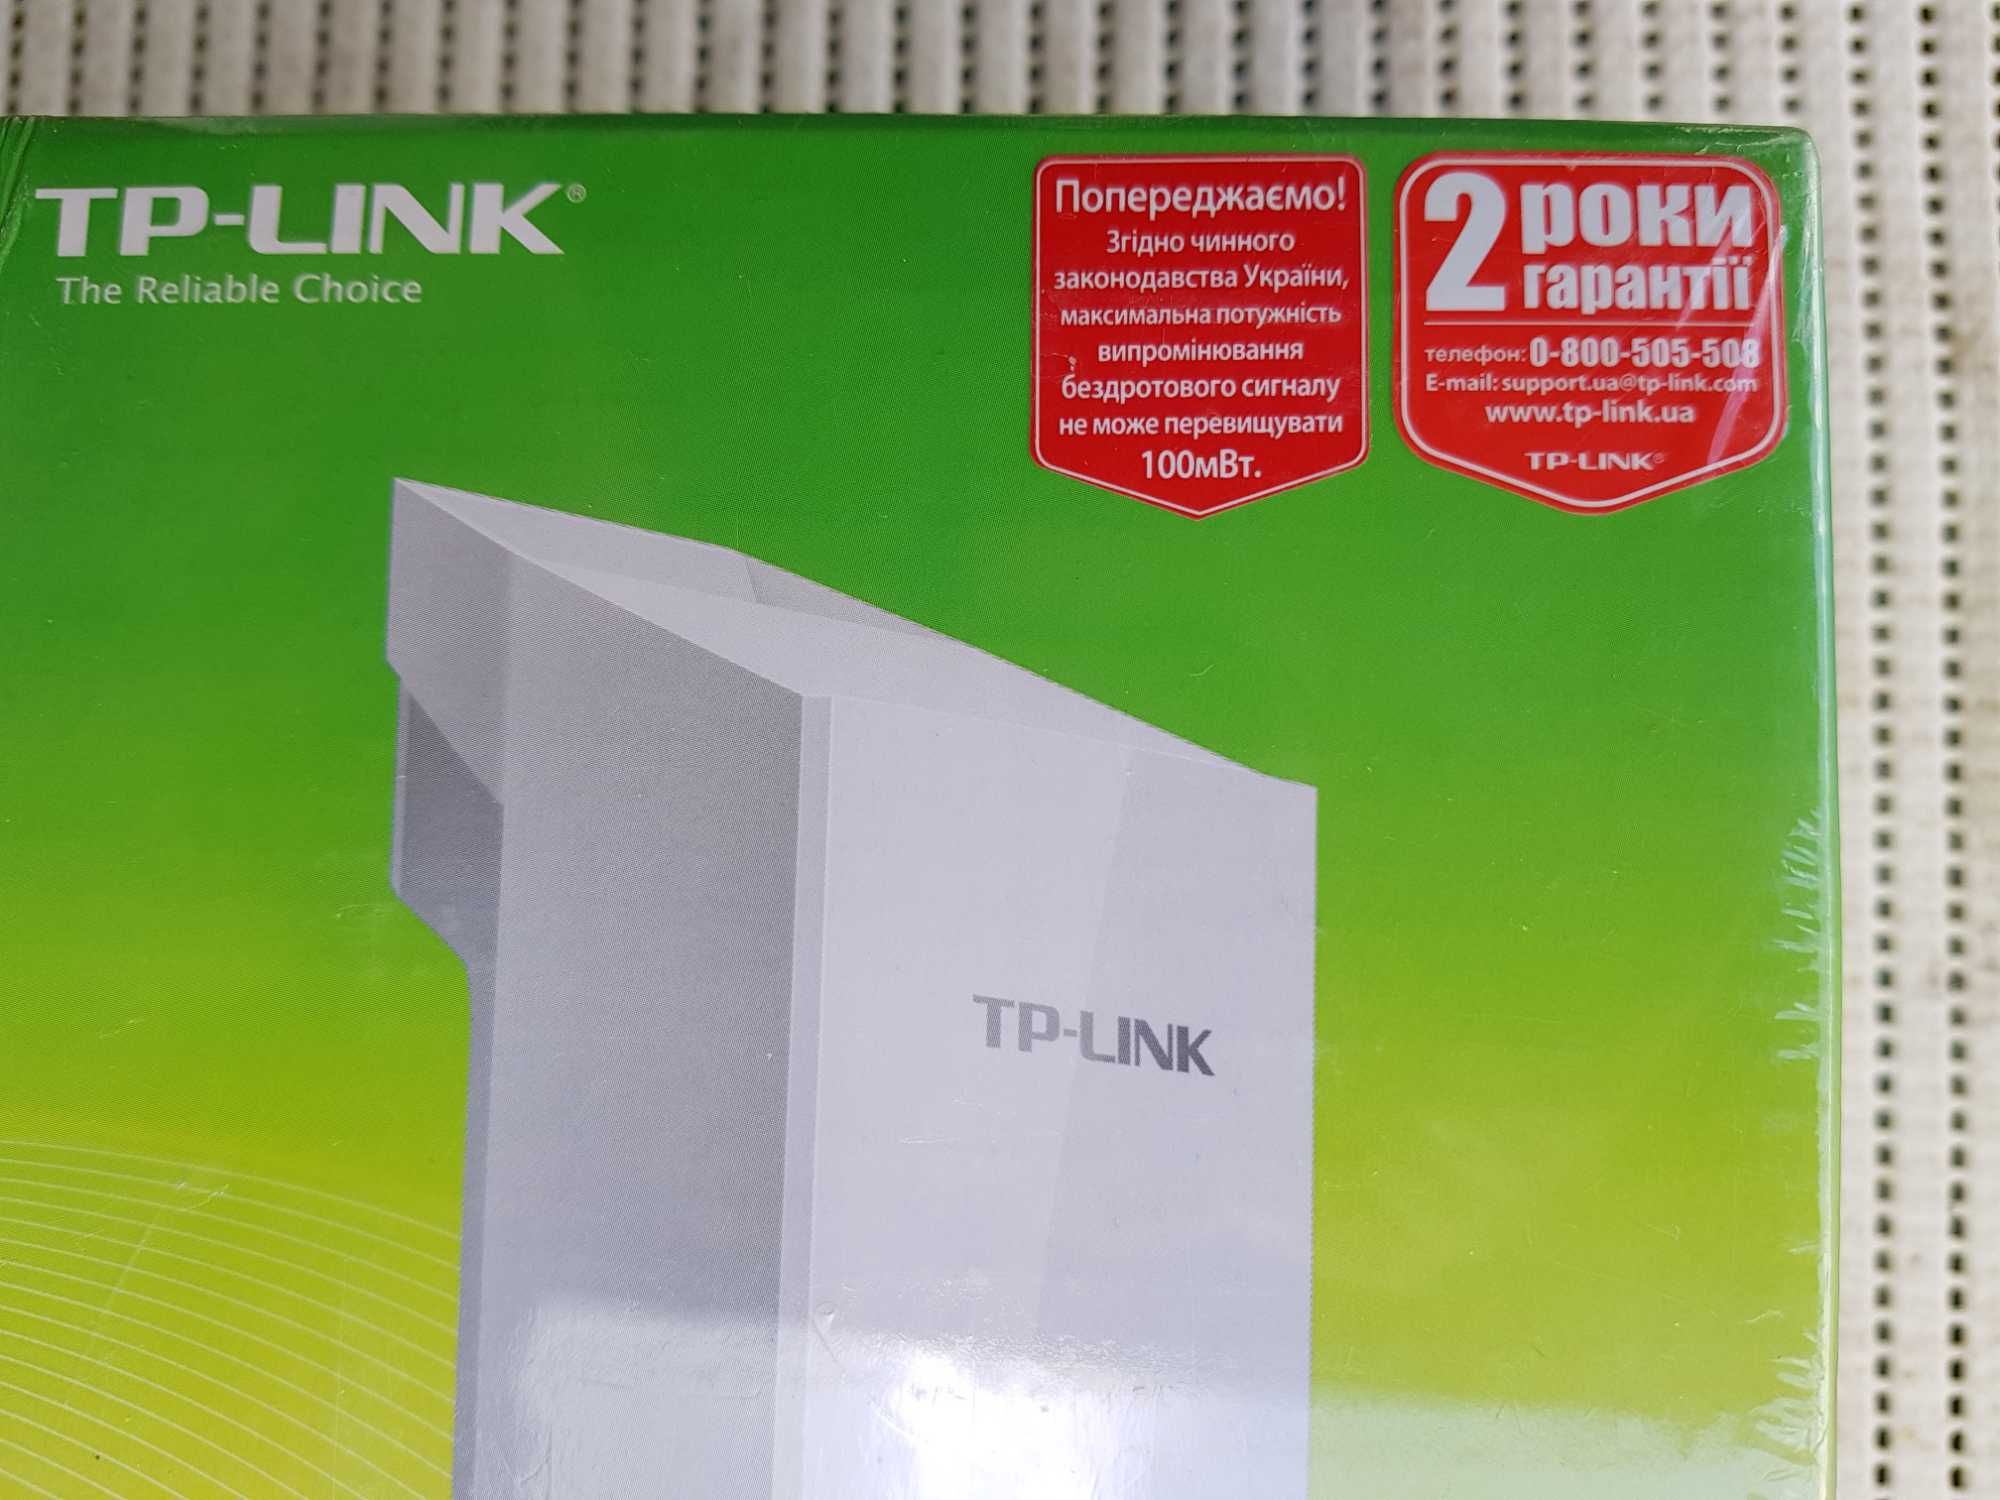 Точка доступа Wi-Fi TP-Link CPE510 з гарантією.